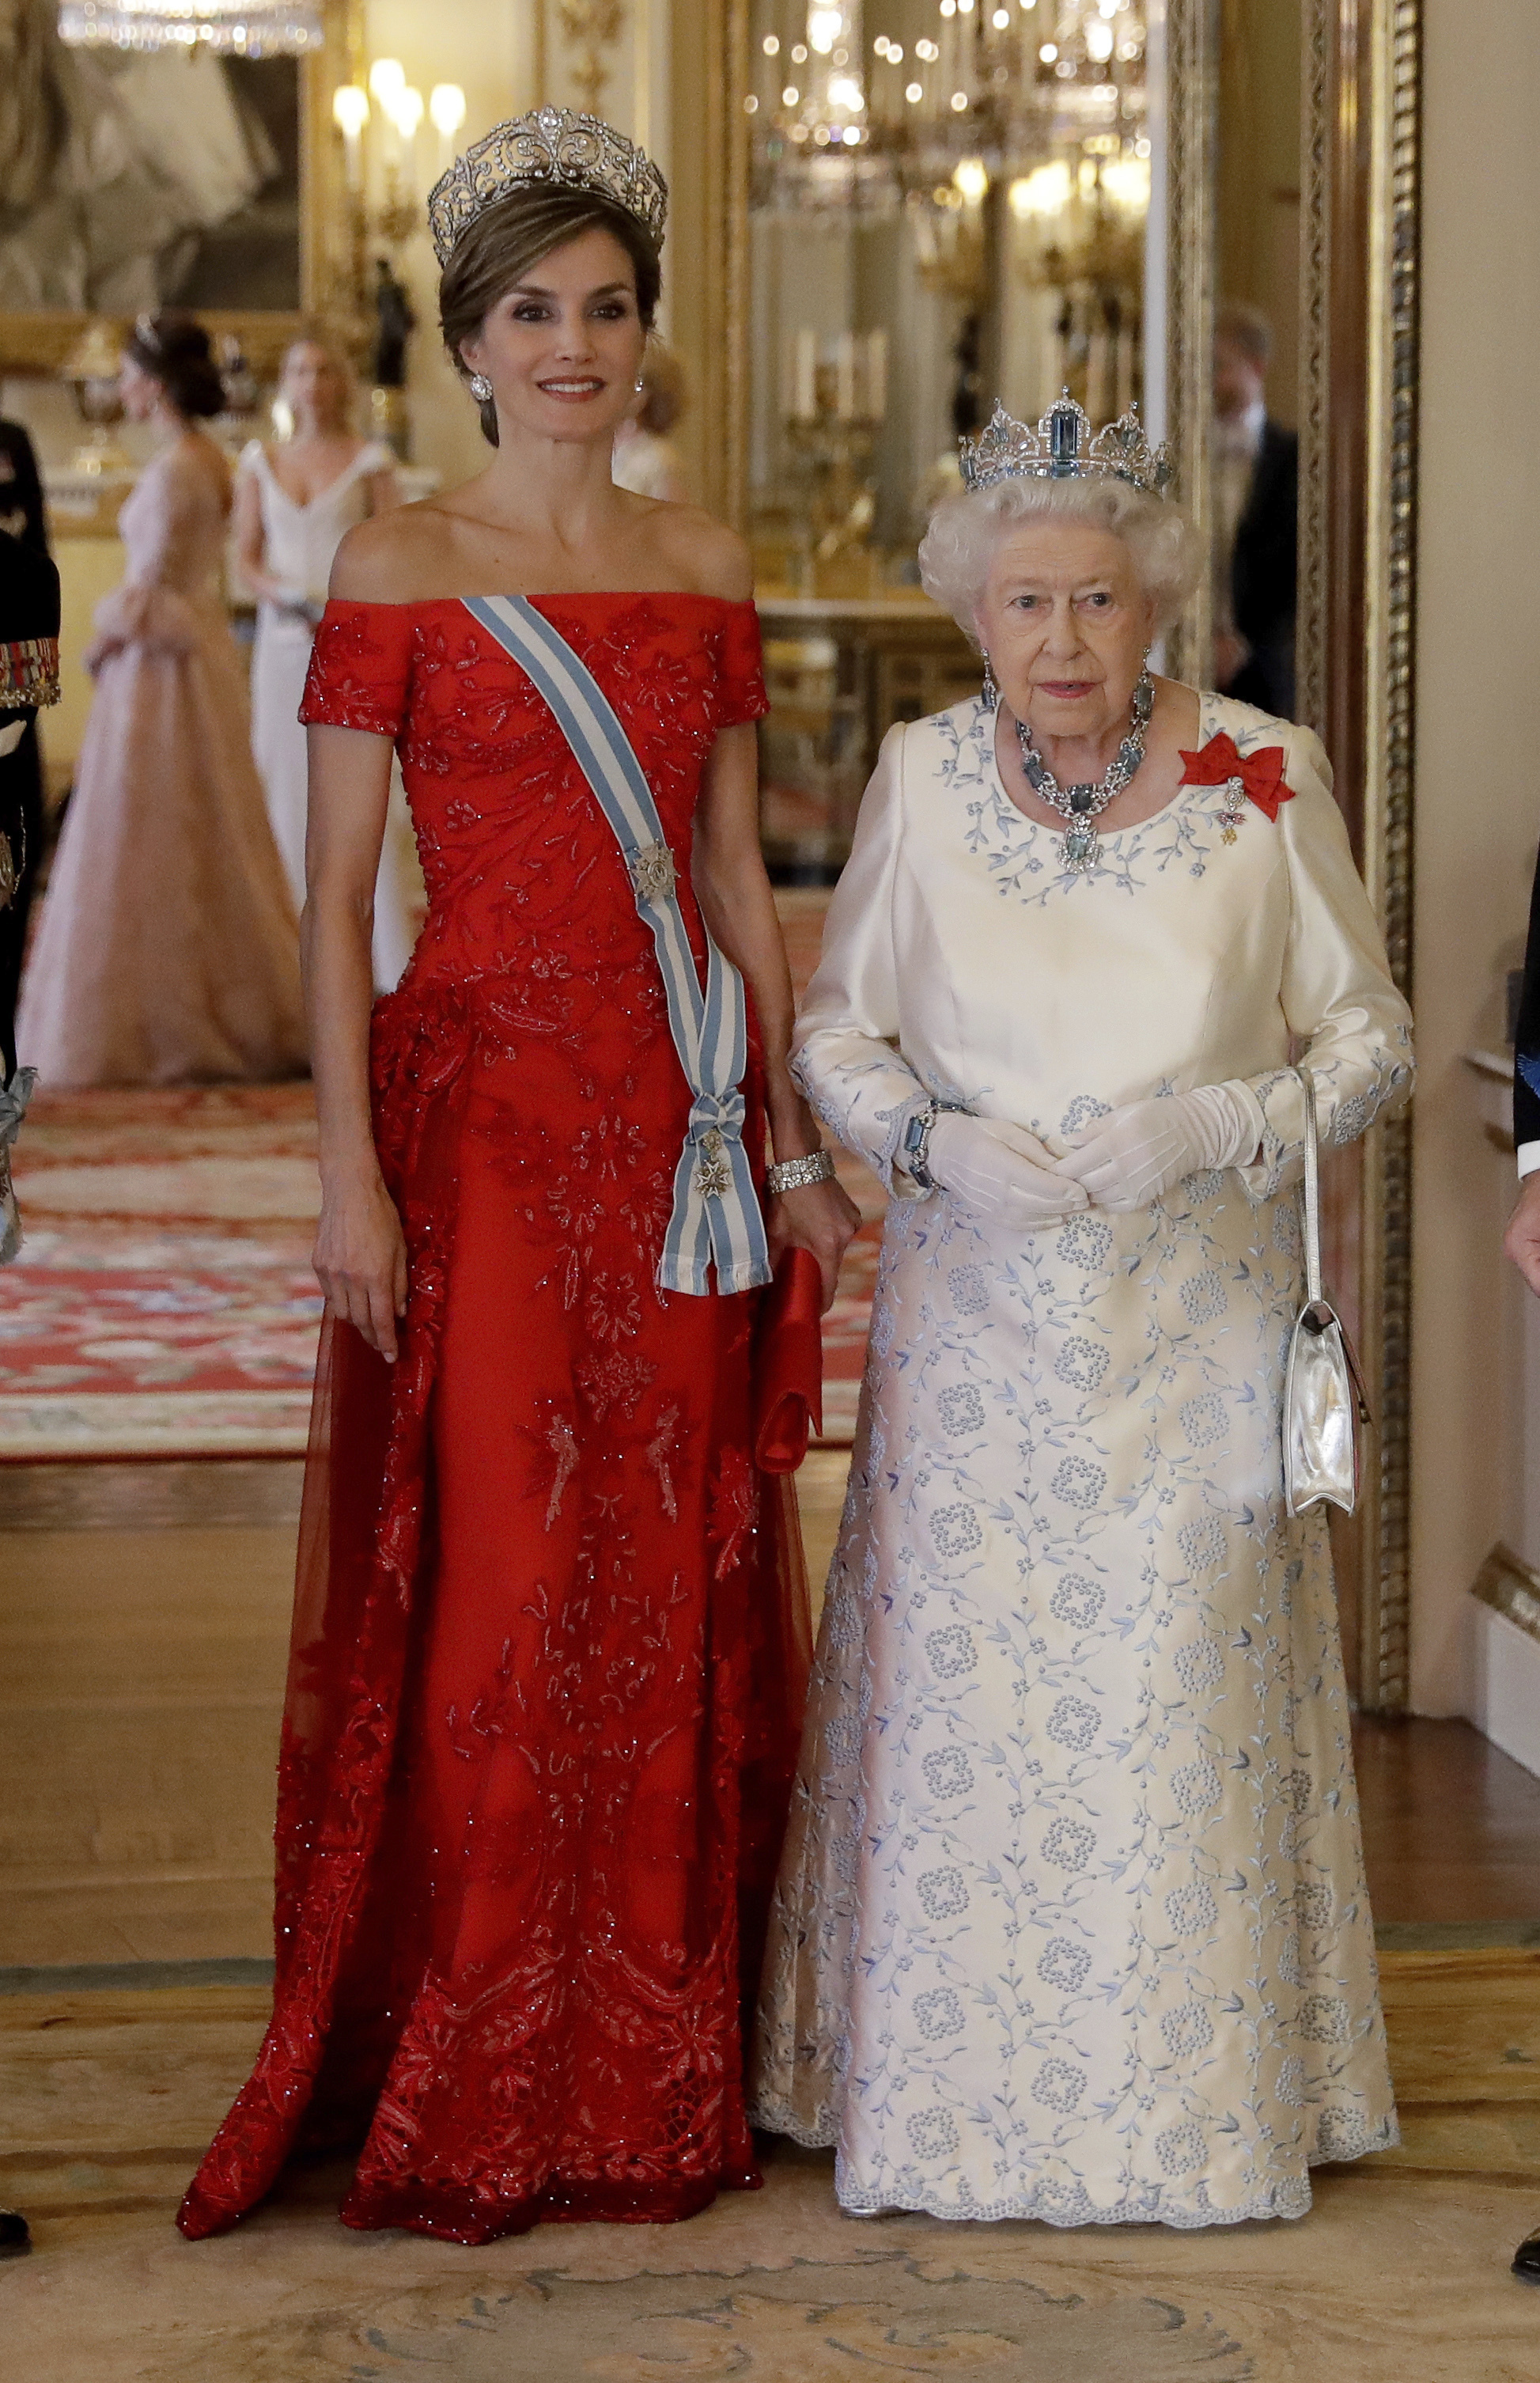 La tiara Flor de Lis, la favorita de doña Letizia, presenta el emblema floral de la casa real española (Getty Images)